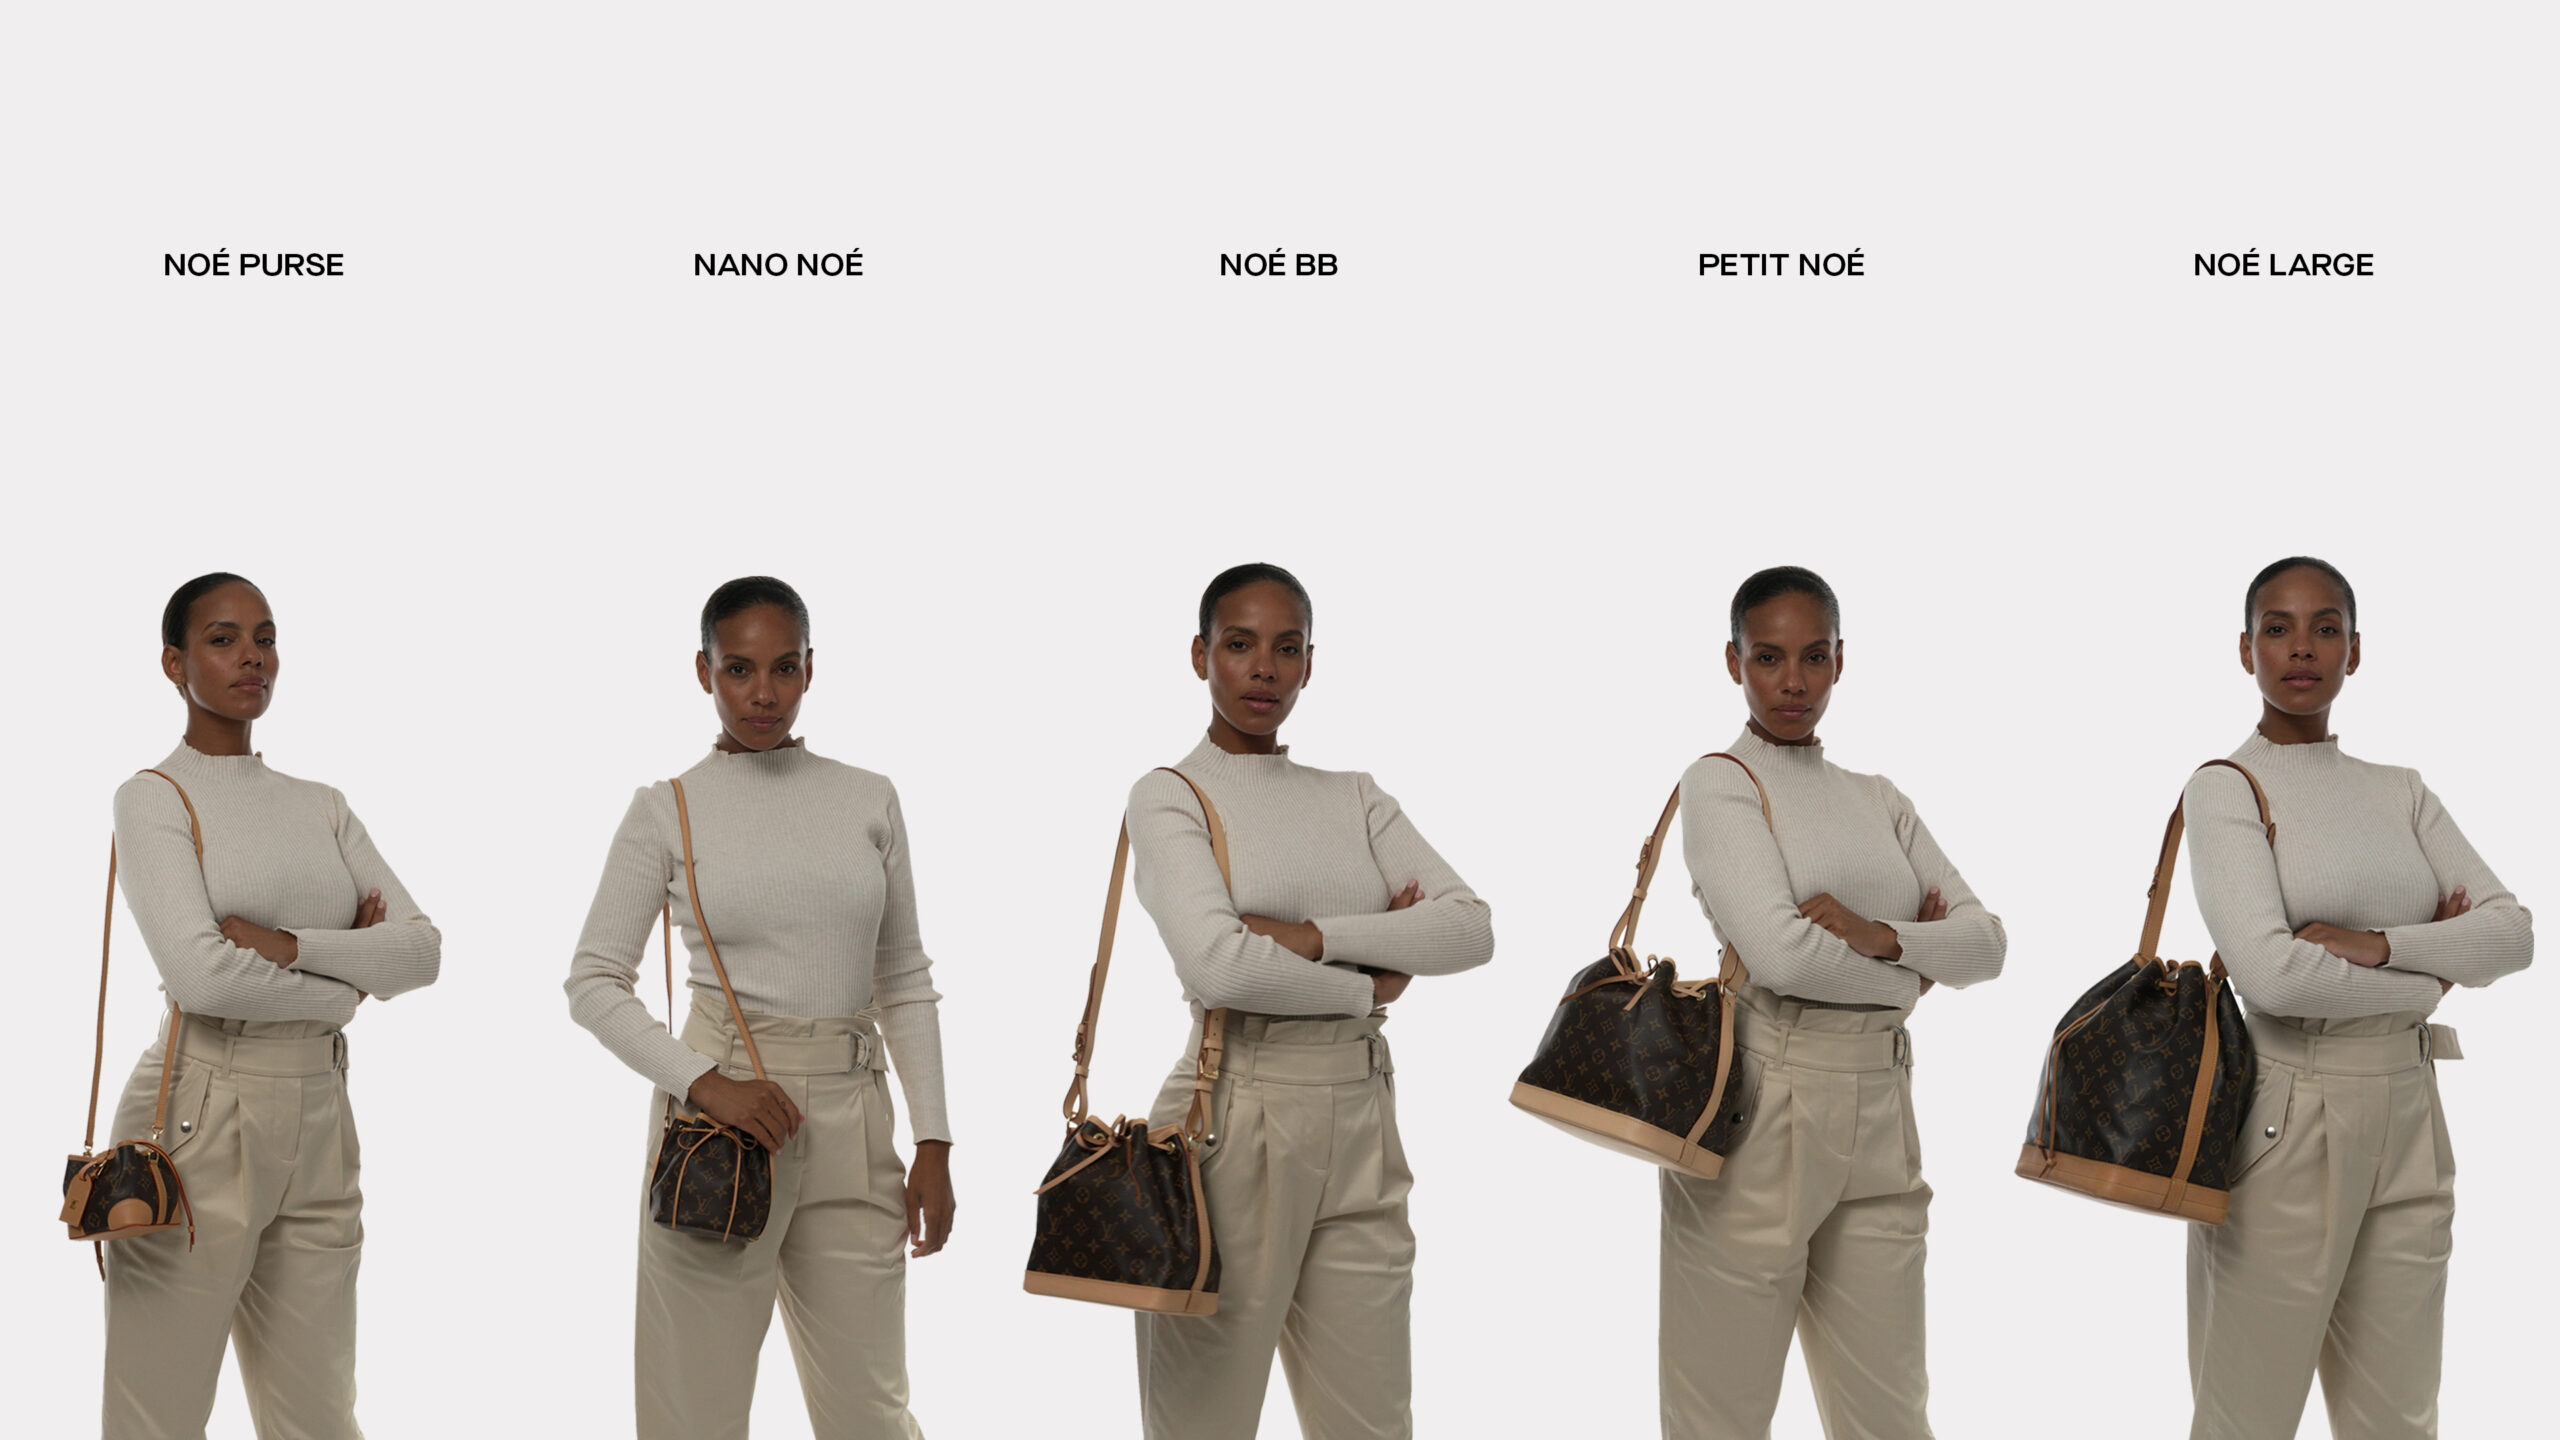 Louis Vuitton NOE PURSE Comparison vs, Louis Vuitton NANO NOE